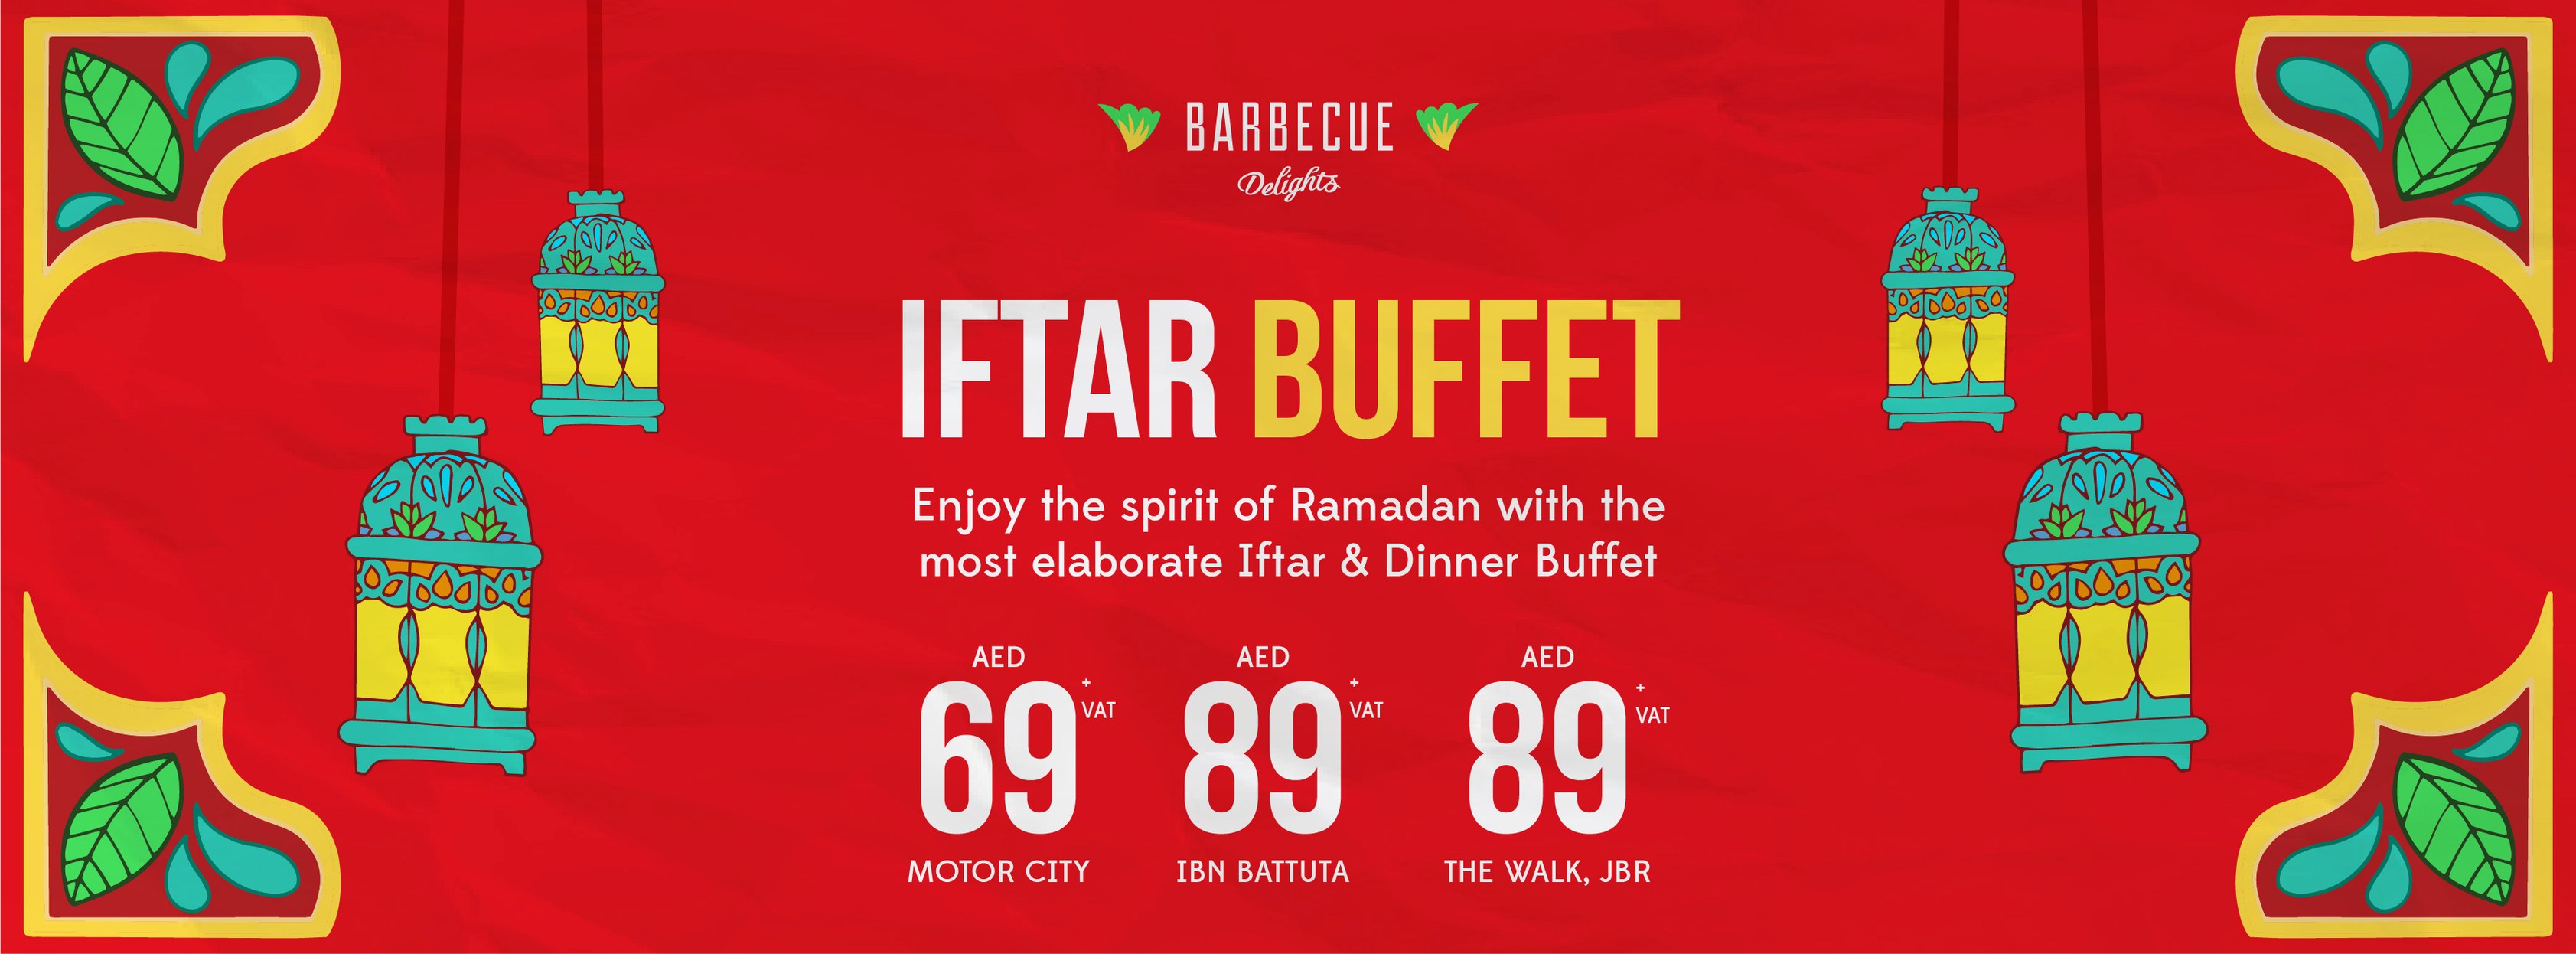 Barbeque-Delights-Ramadan-Iftar-Buffet